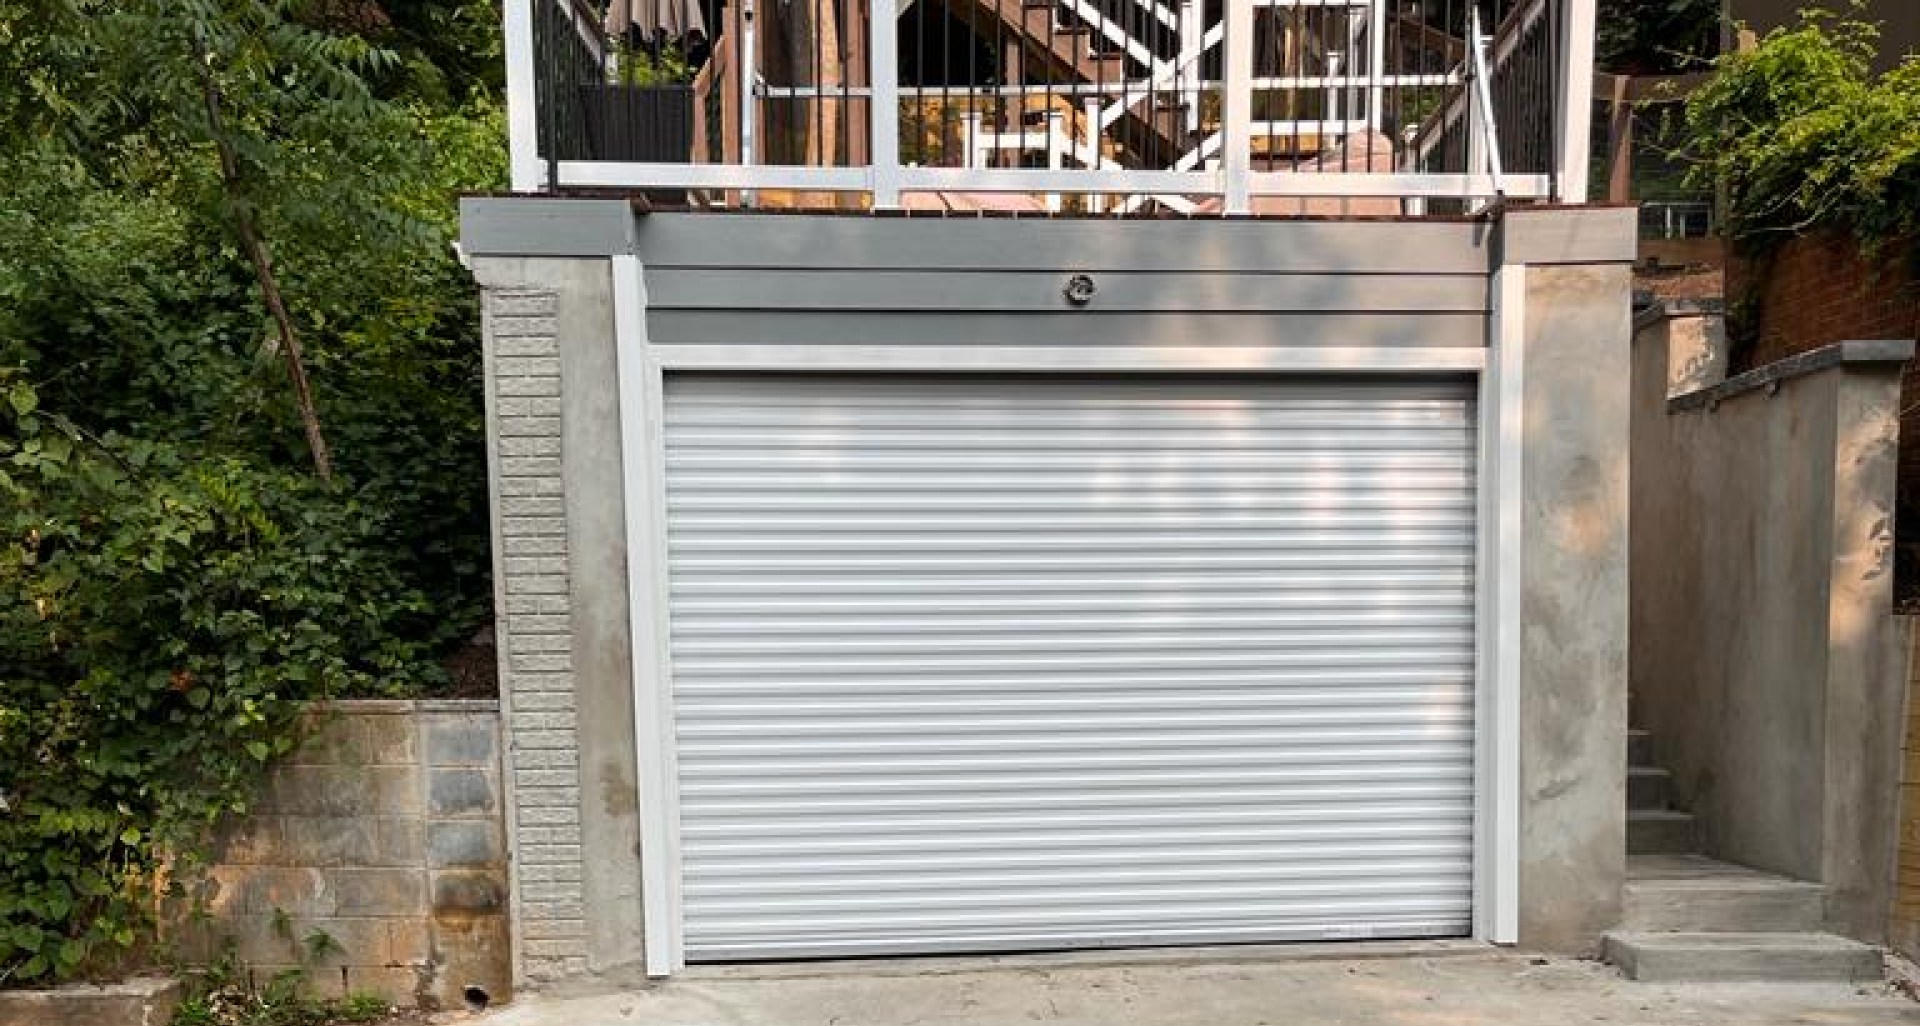 New Garage doors for Maryland Commercial properties